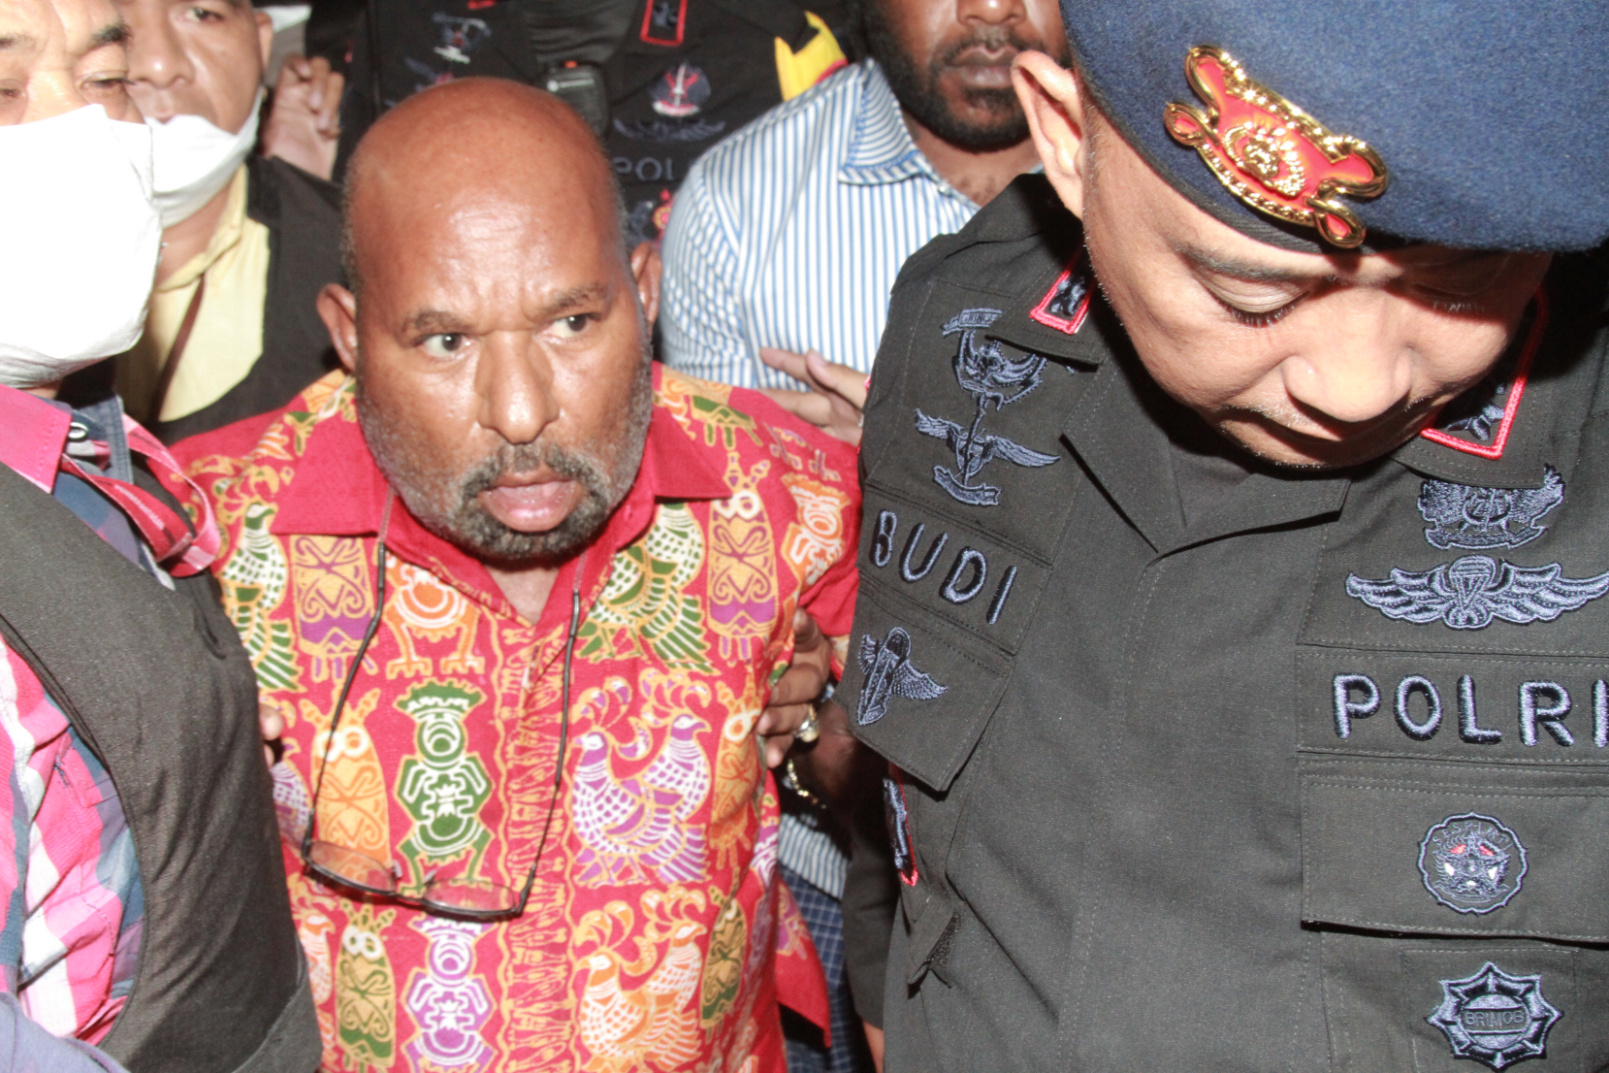 Gubernur Papua Lukas Enembe dikawal ketat saat tiba di RSPAD untuk menjalani pemeriksaan kesehatan (Ashar/SinPo.id)